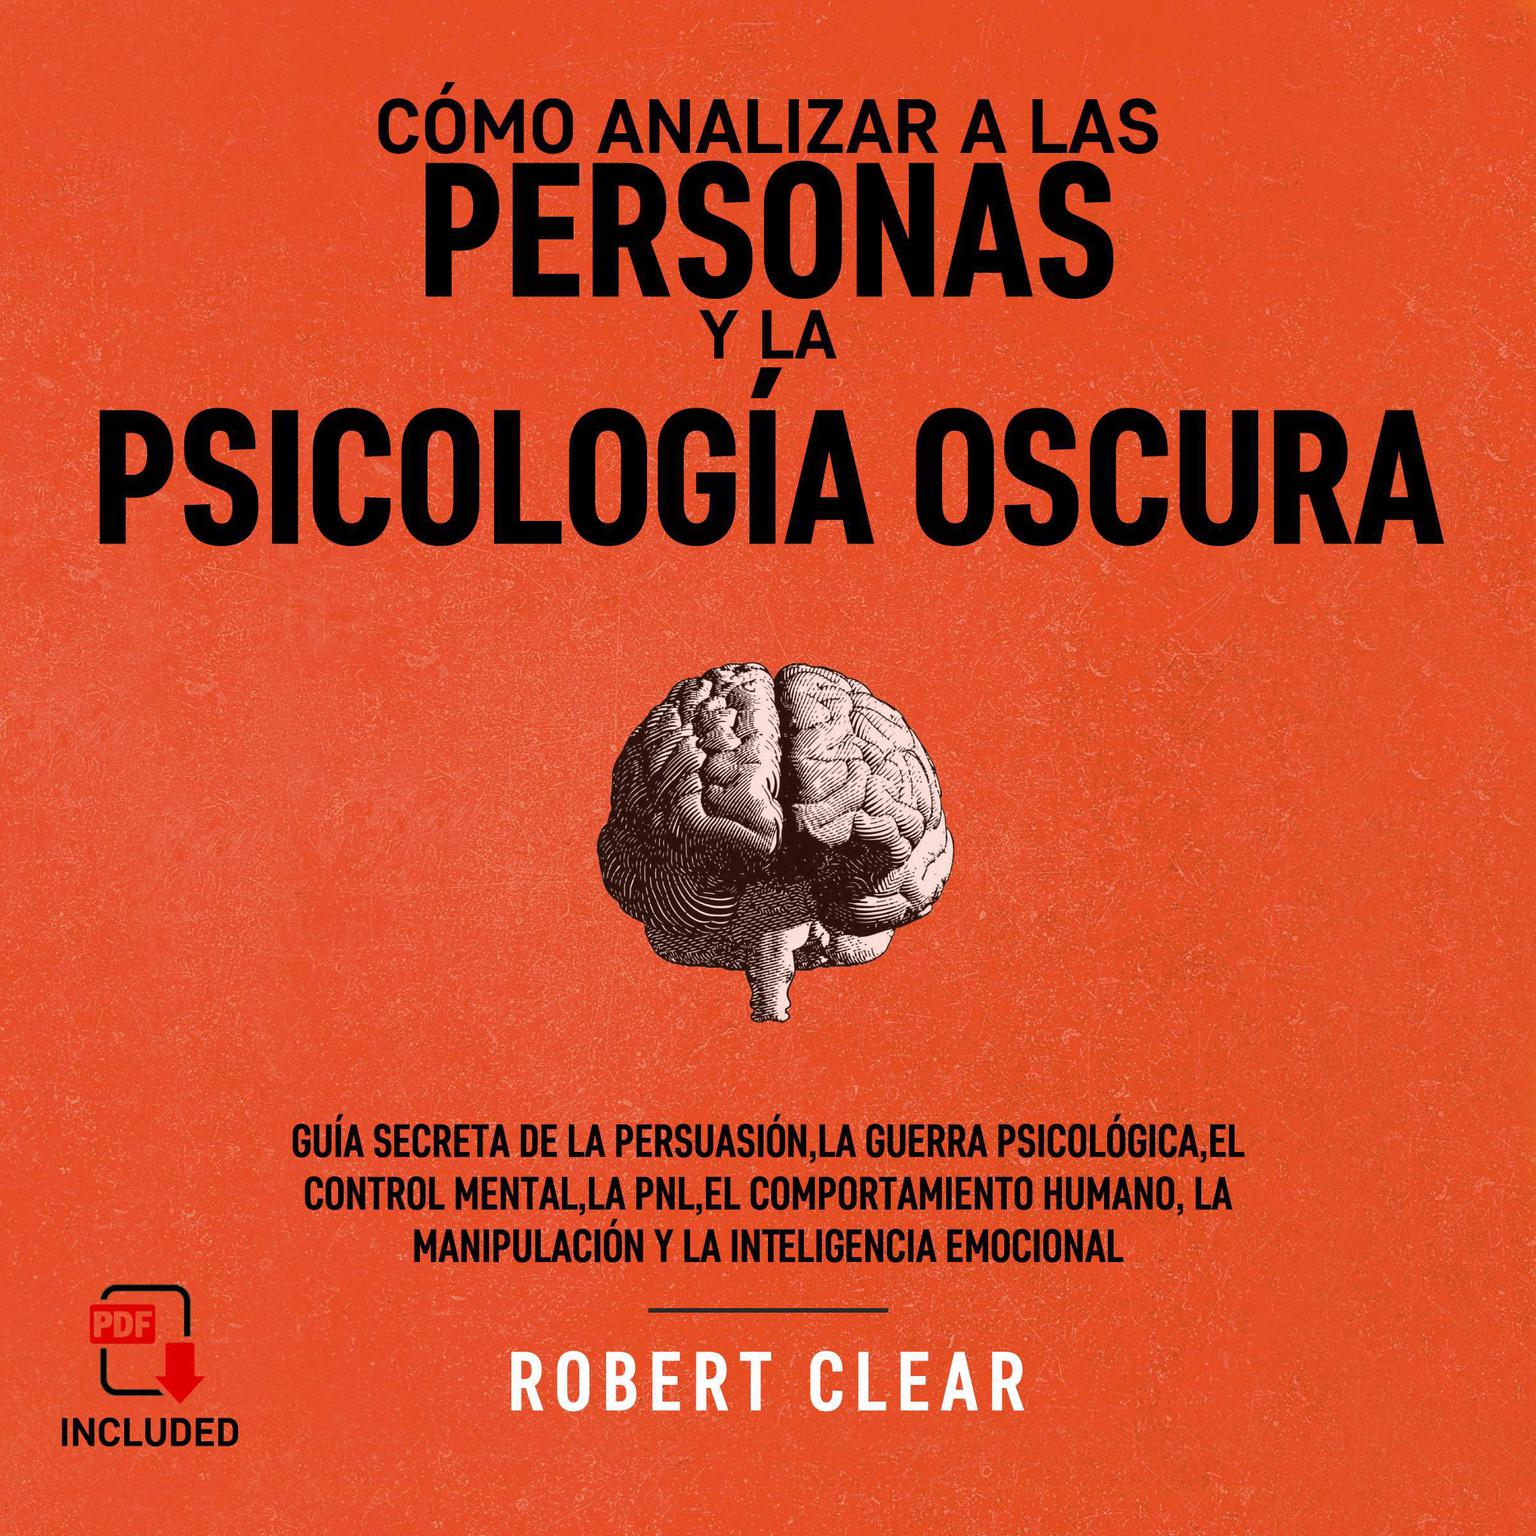 Cómo analizar a las personas y la psicología oscura Audiobook, by Robert Clear